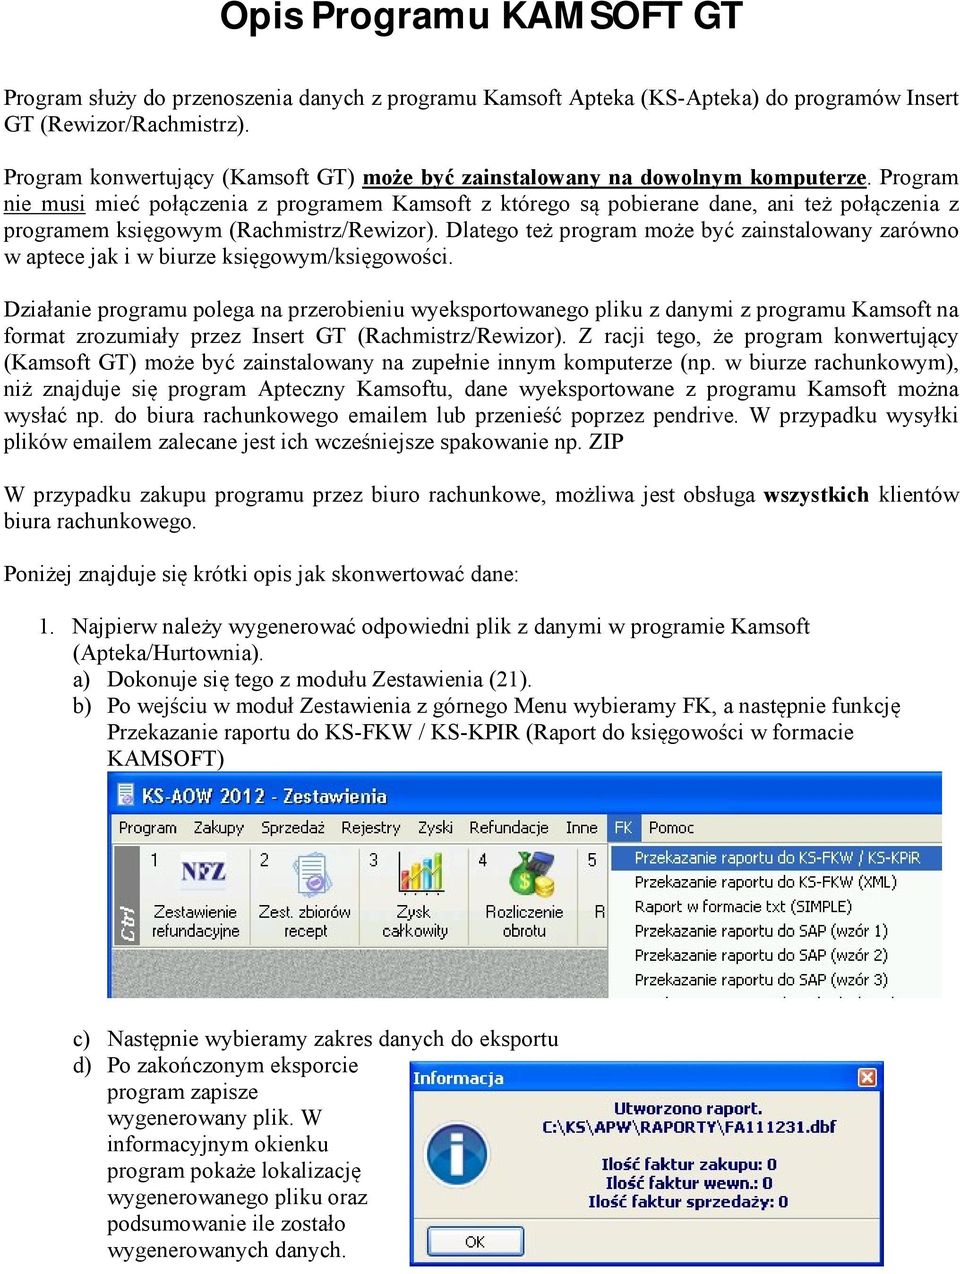 Program nie musi mieć połączenia z programem Kamsoft z którego są pobierane dane, ani też połączenia z programem księgowym (Rachmistrz/Rewizor).